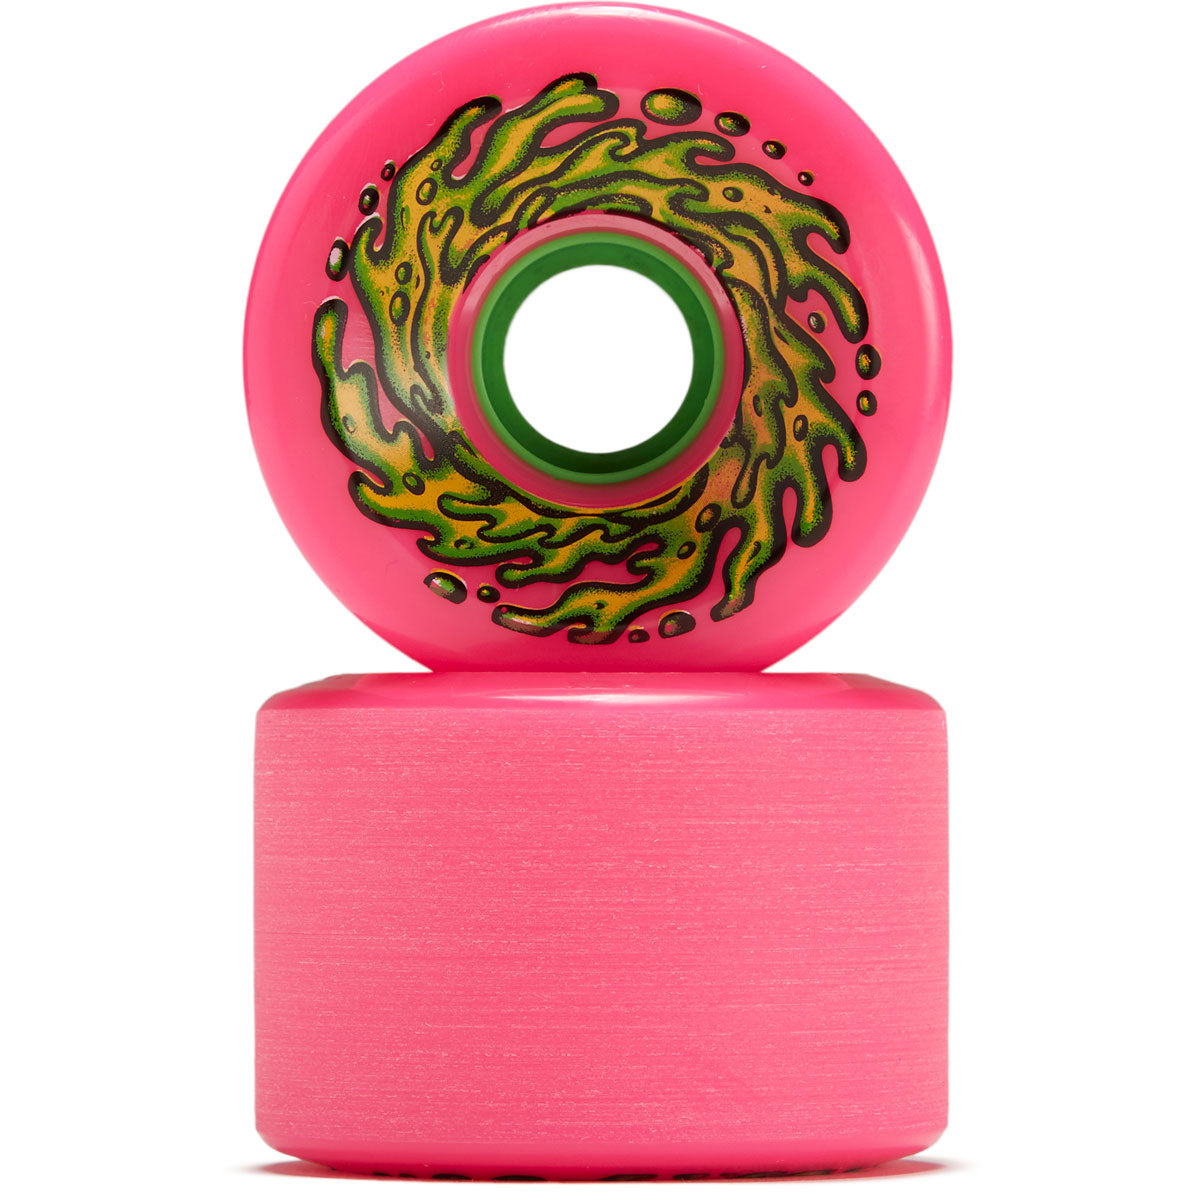 Slime Balls OG Slime Pink 78a Skateboard Wheels - Pink - 66mm image 2